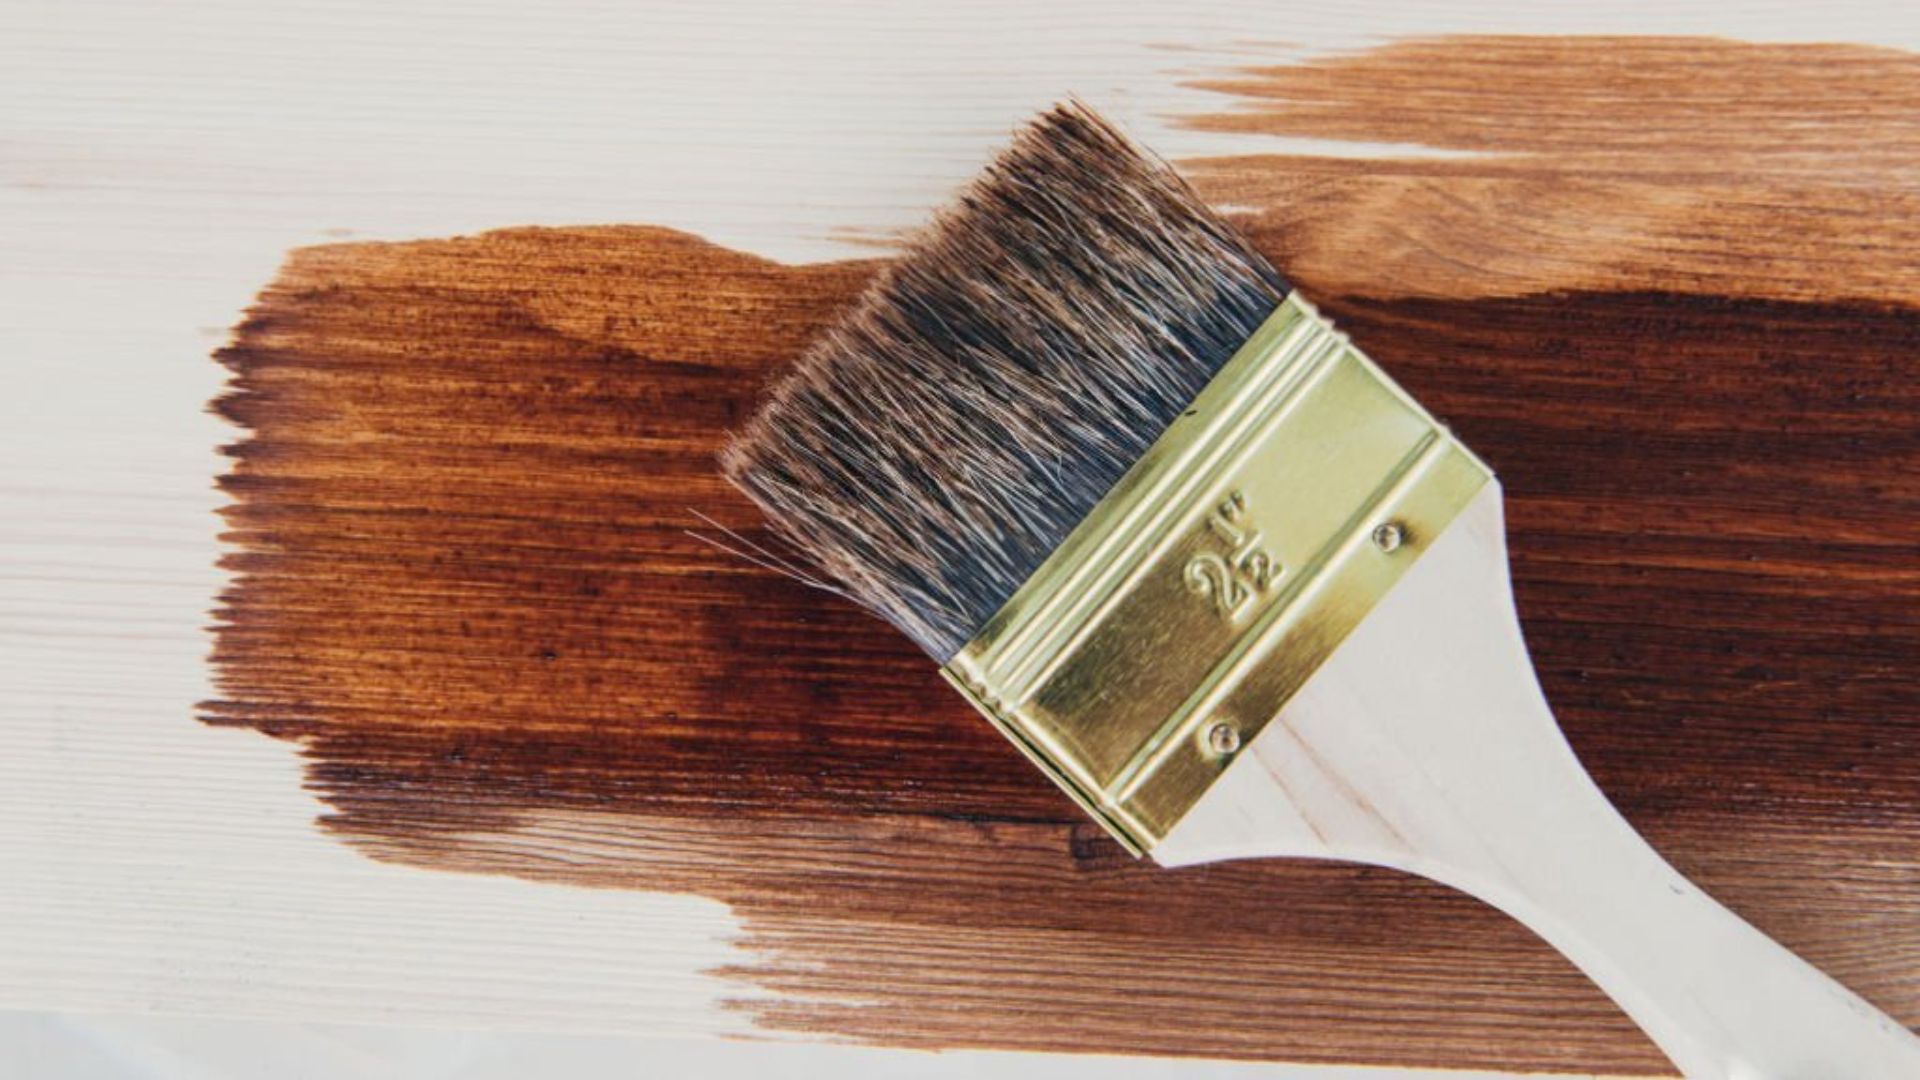 Sơn vecni thường có màu cánh gián chuyên bảo vệ đồ nội thất làm từ gỗ | Nguồn: Internet